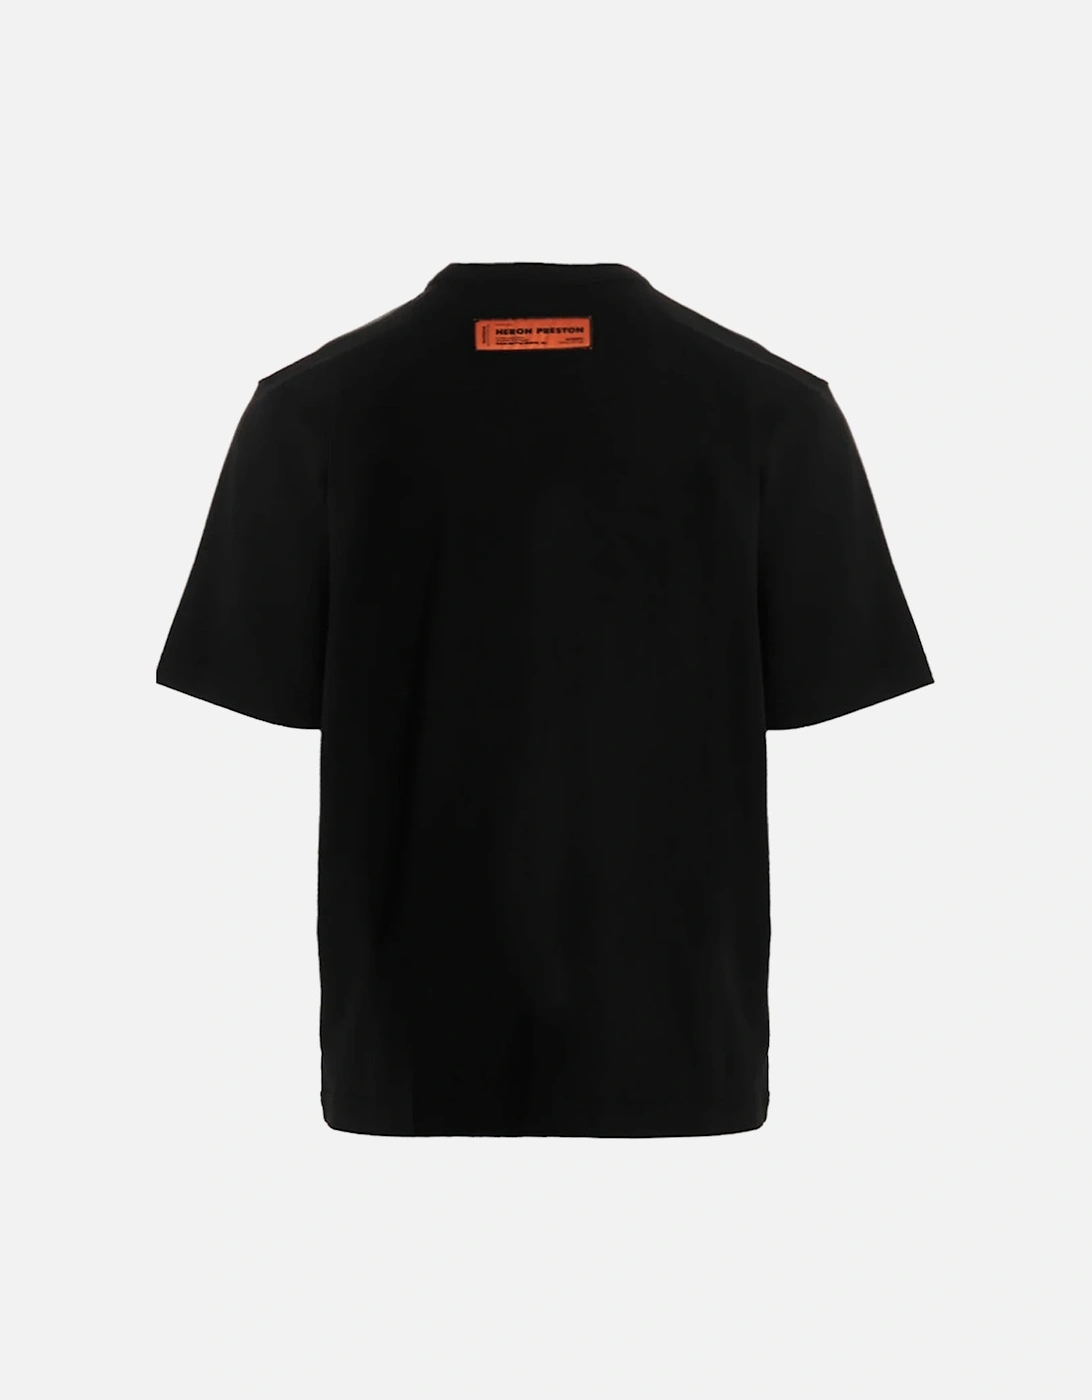 Misprinted Heron T-Shirt in Black